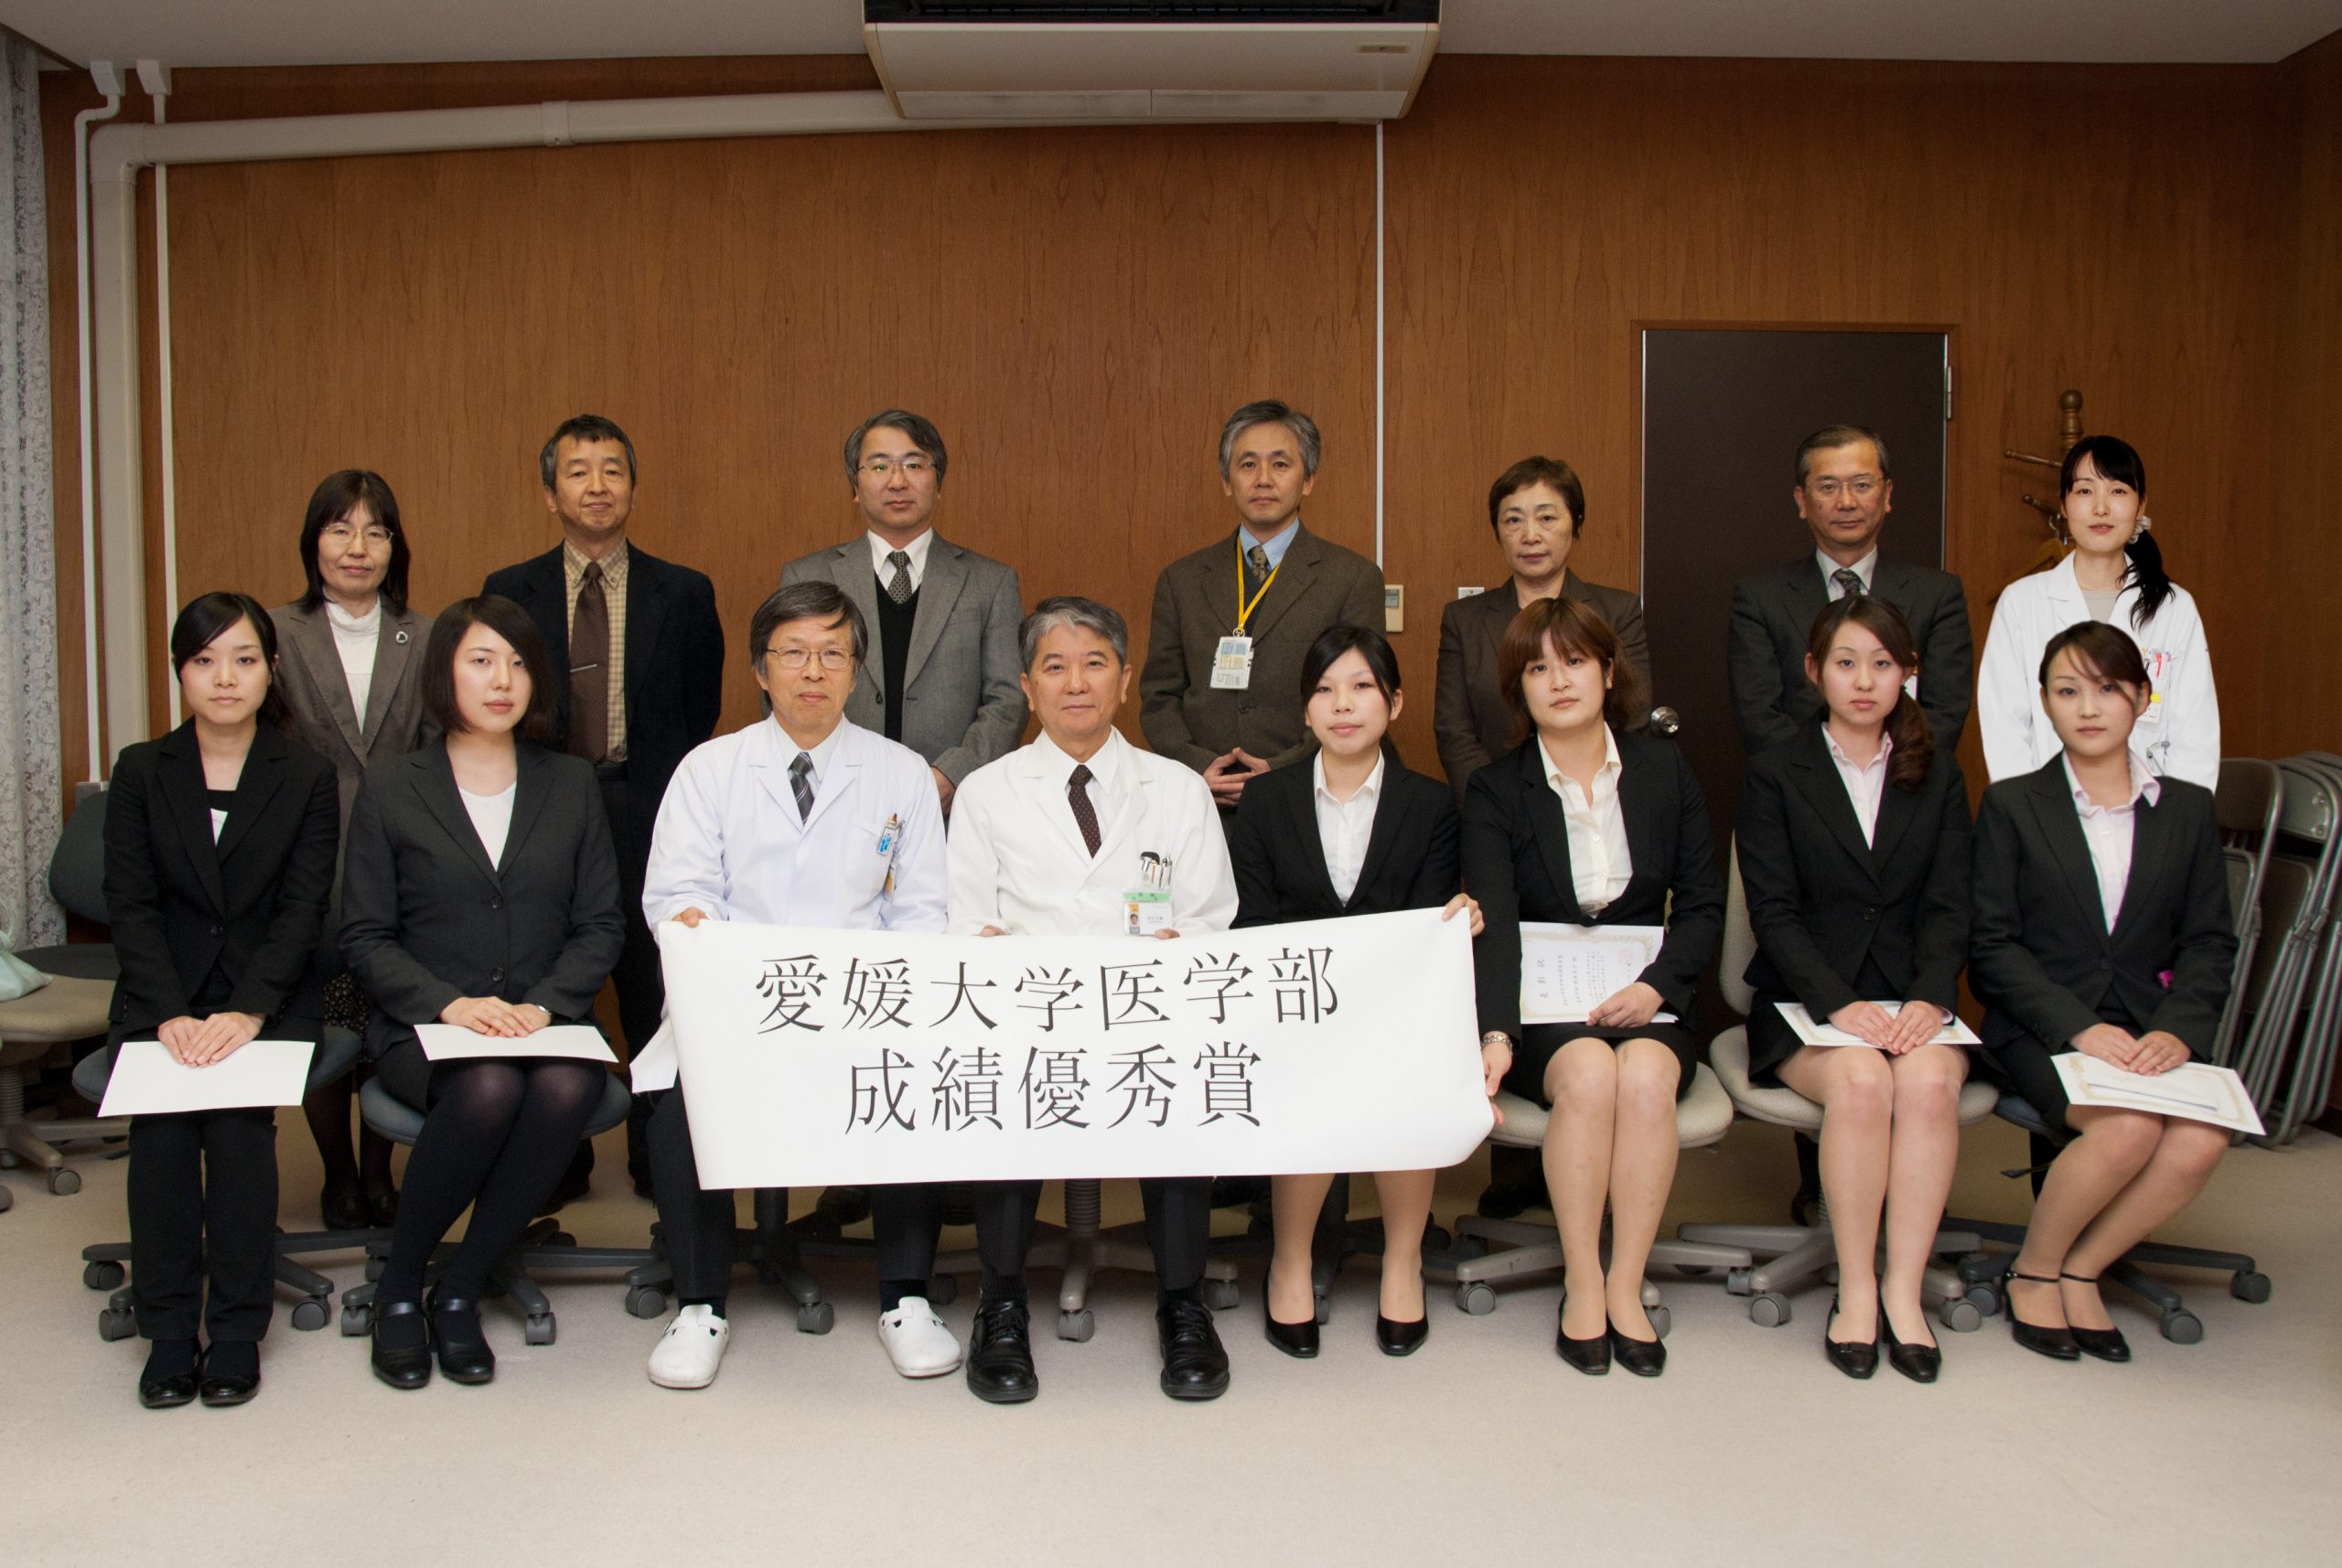 愛媛大学医学部学生表彰を実施しました